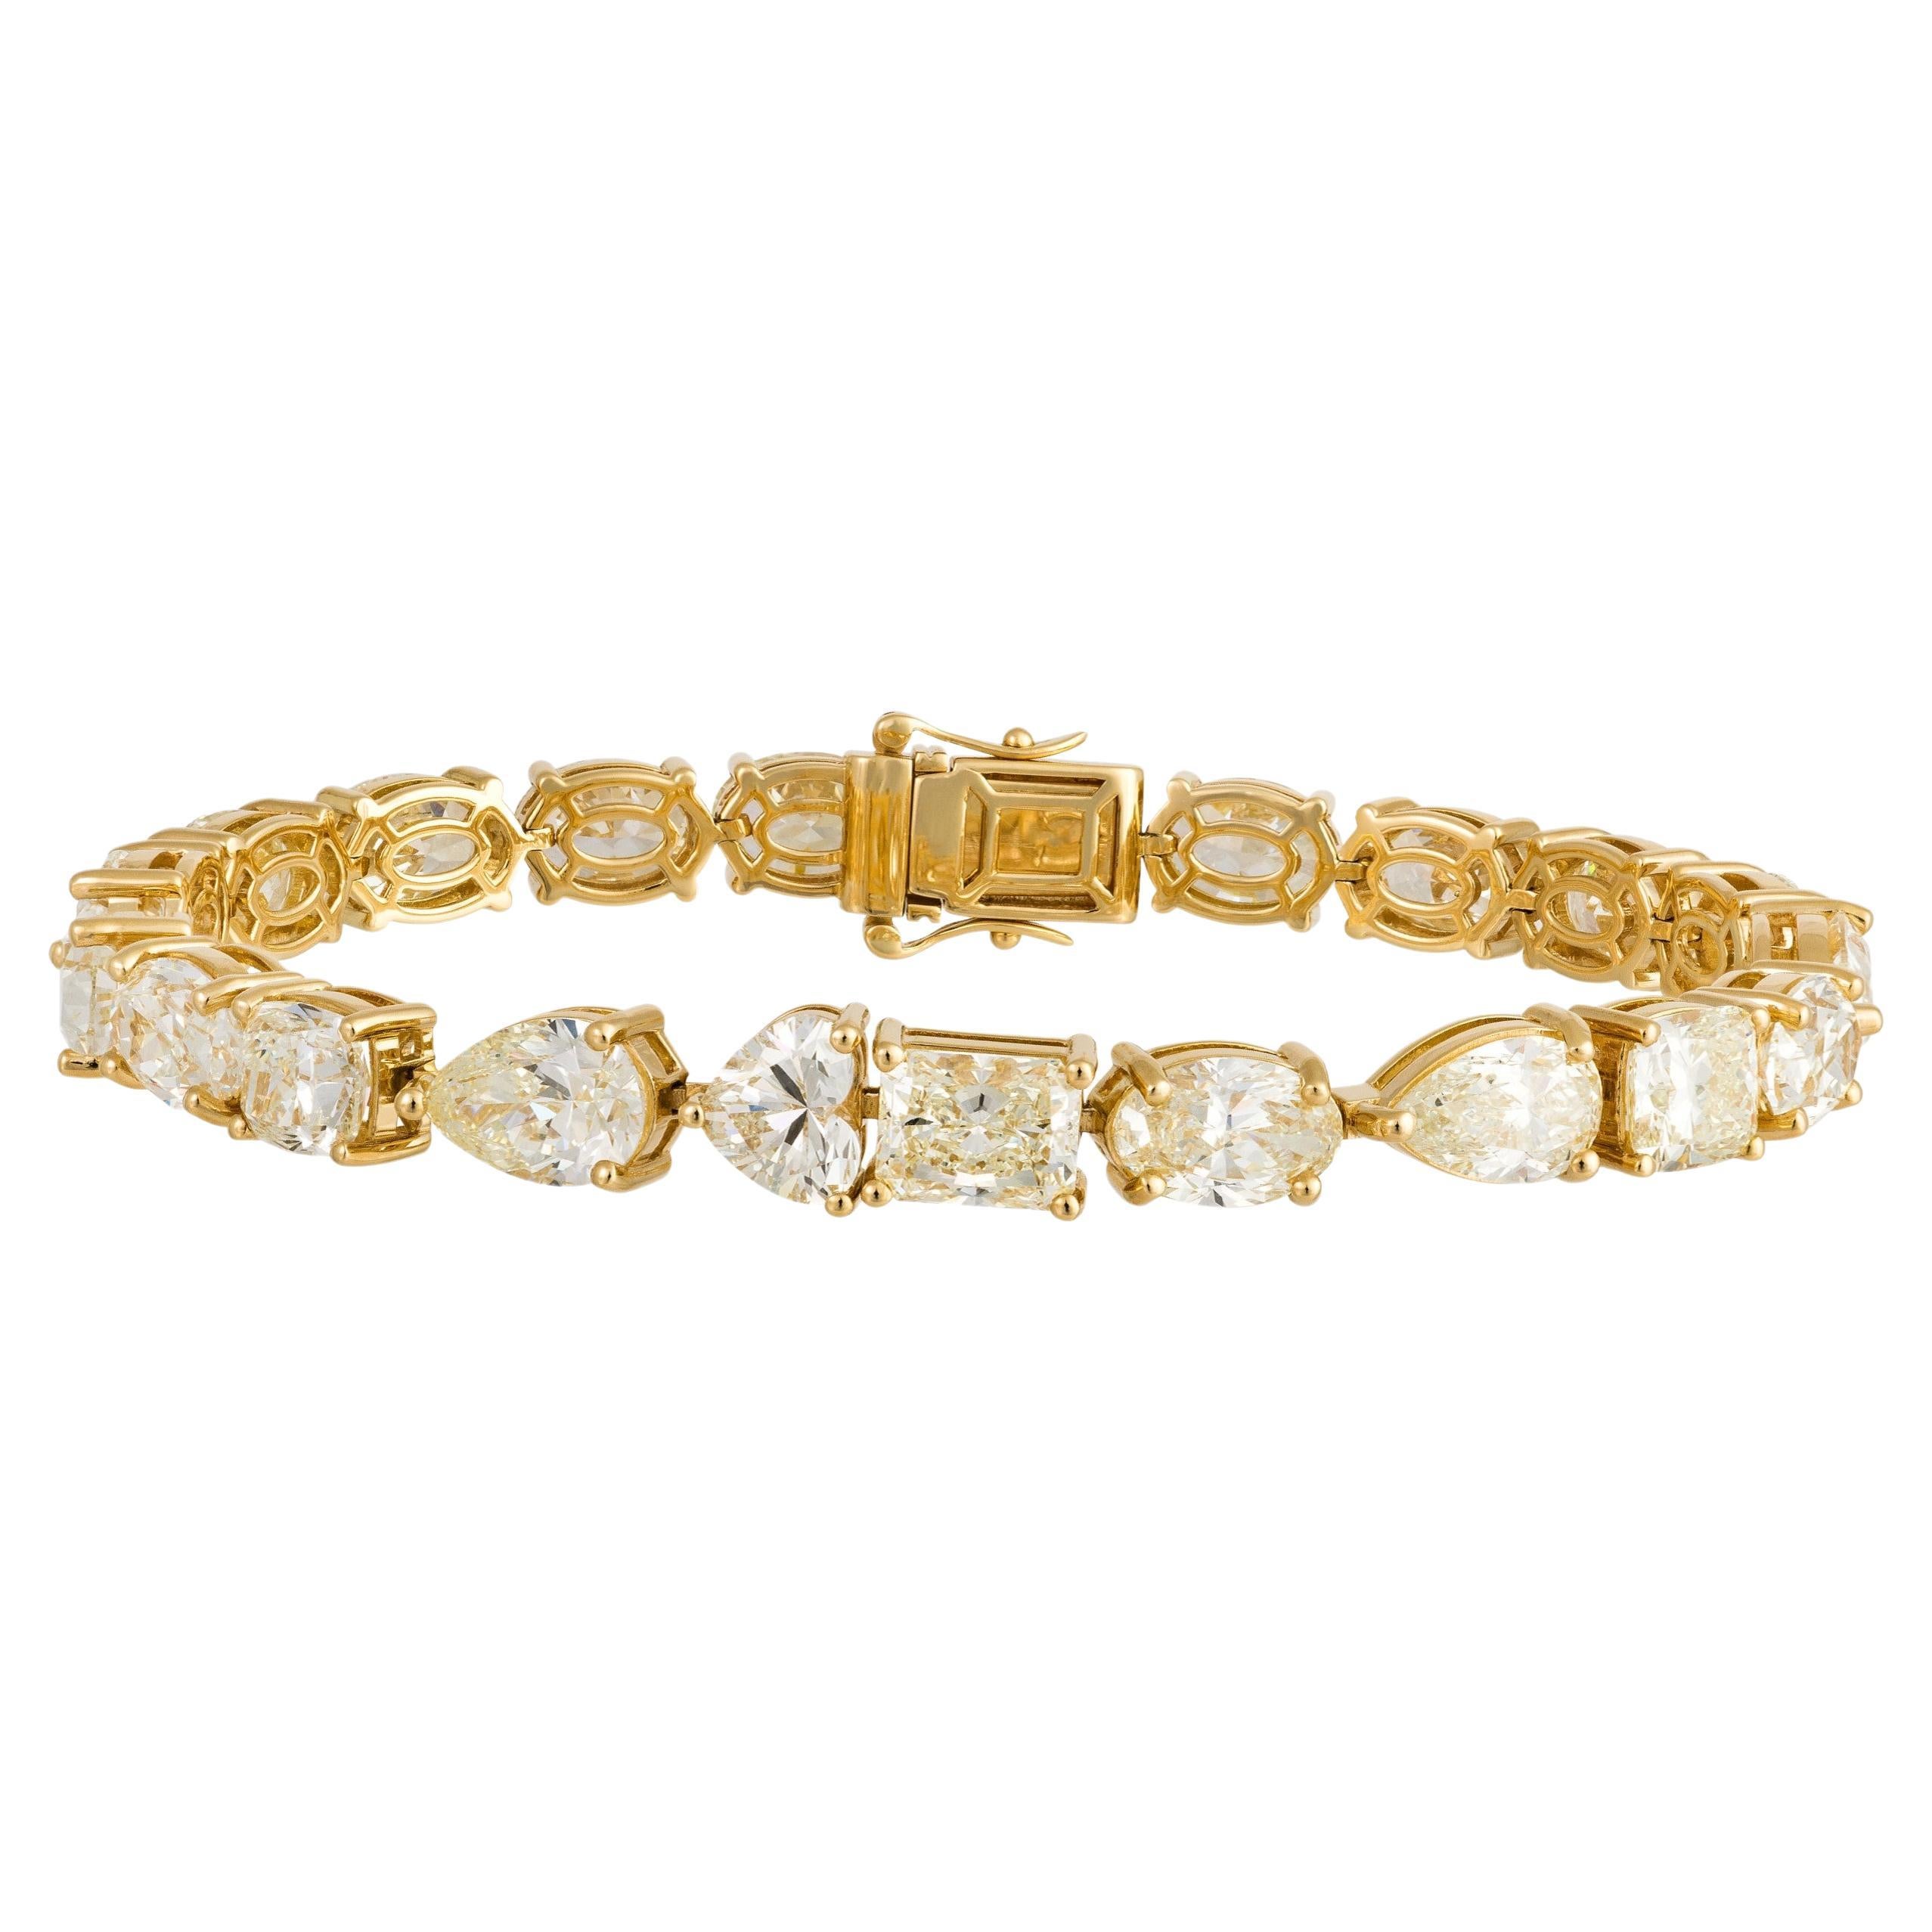 Magnifique bracelet tennis rare 18 carats avec diamant jaune 23 carats, 250 000 $, nouveau avec étiquette en vente